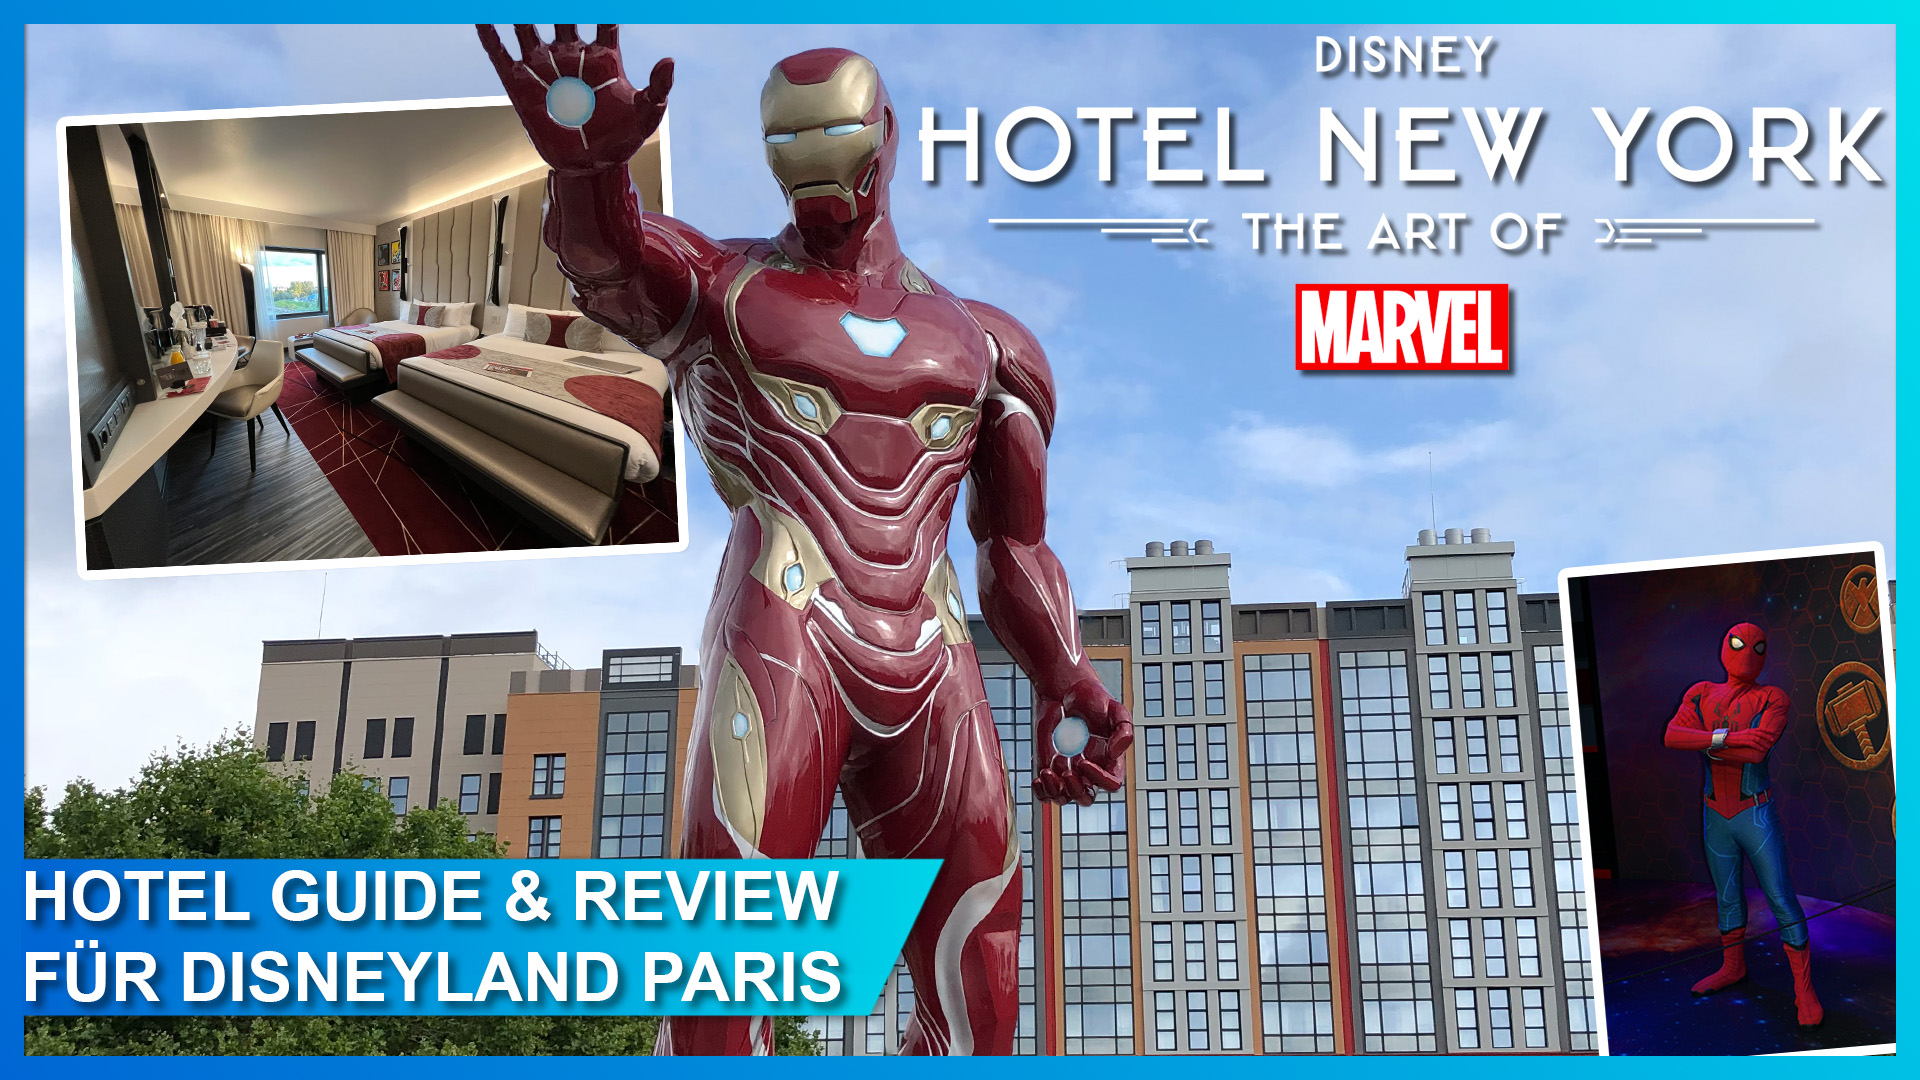 Hotel Guide und Review zu Disney Hotel New York - The Art of Marvel in Disneyland Paris